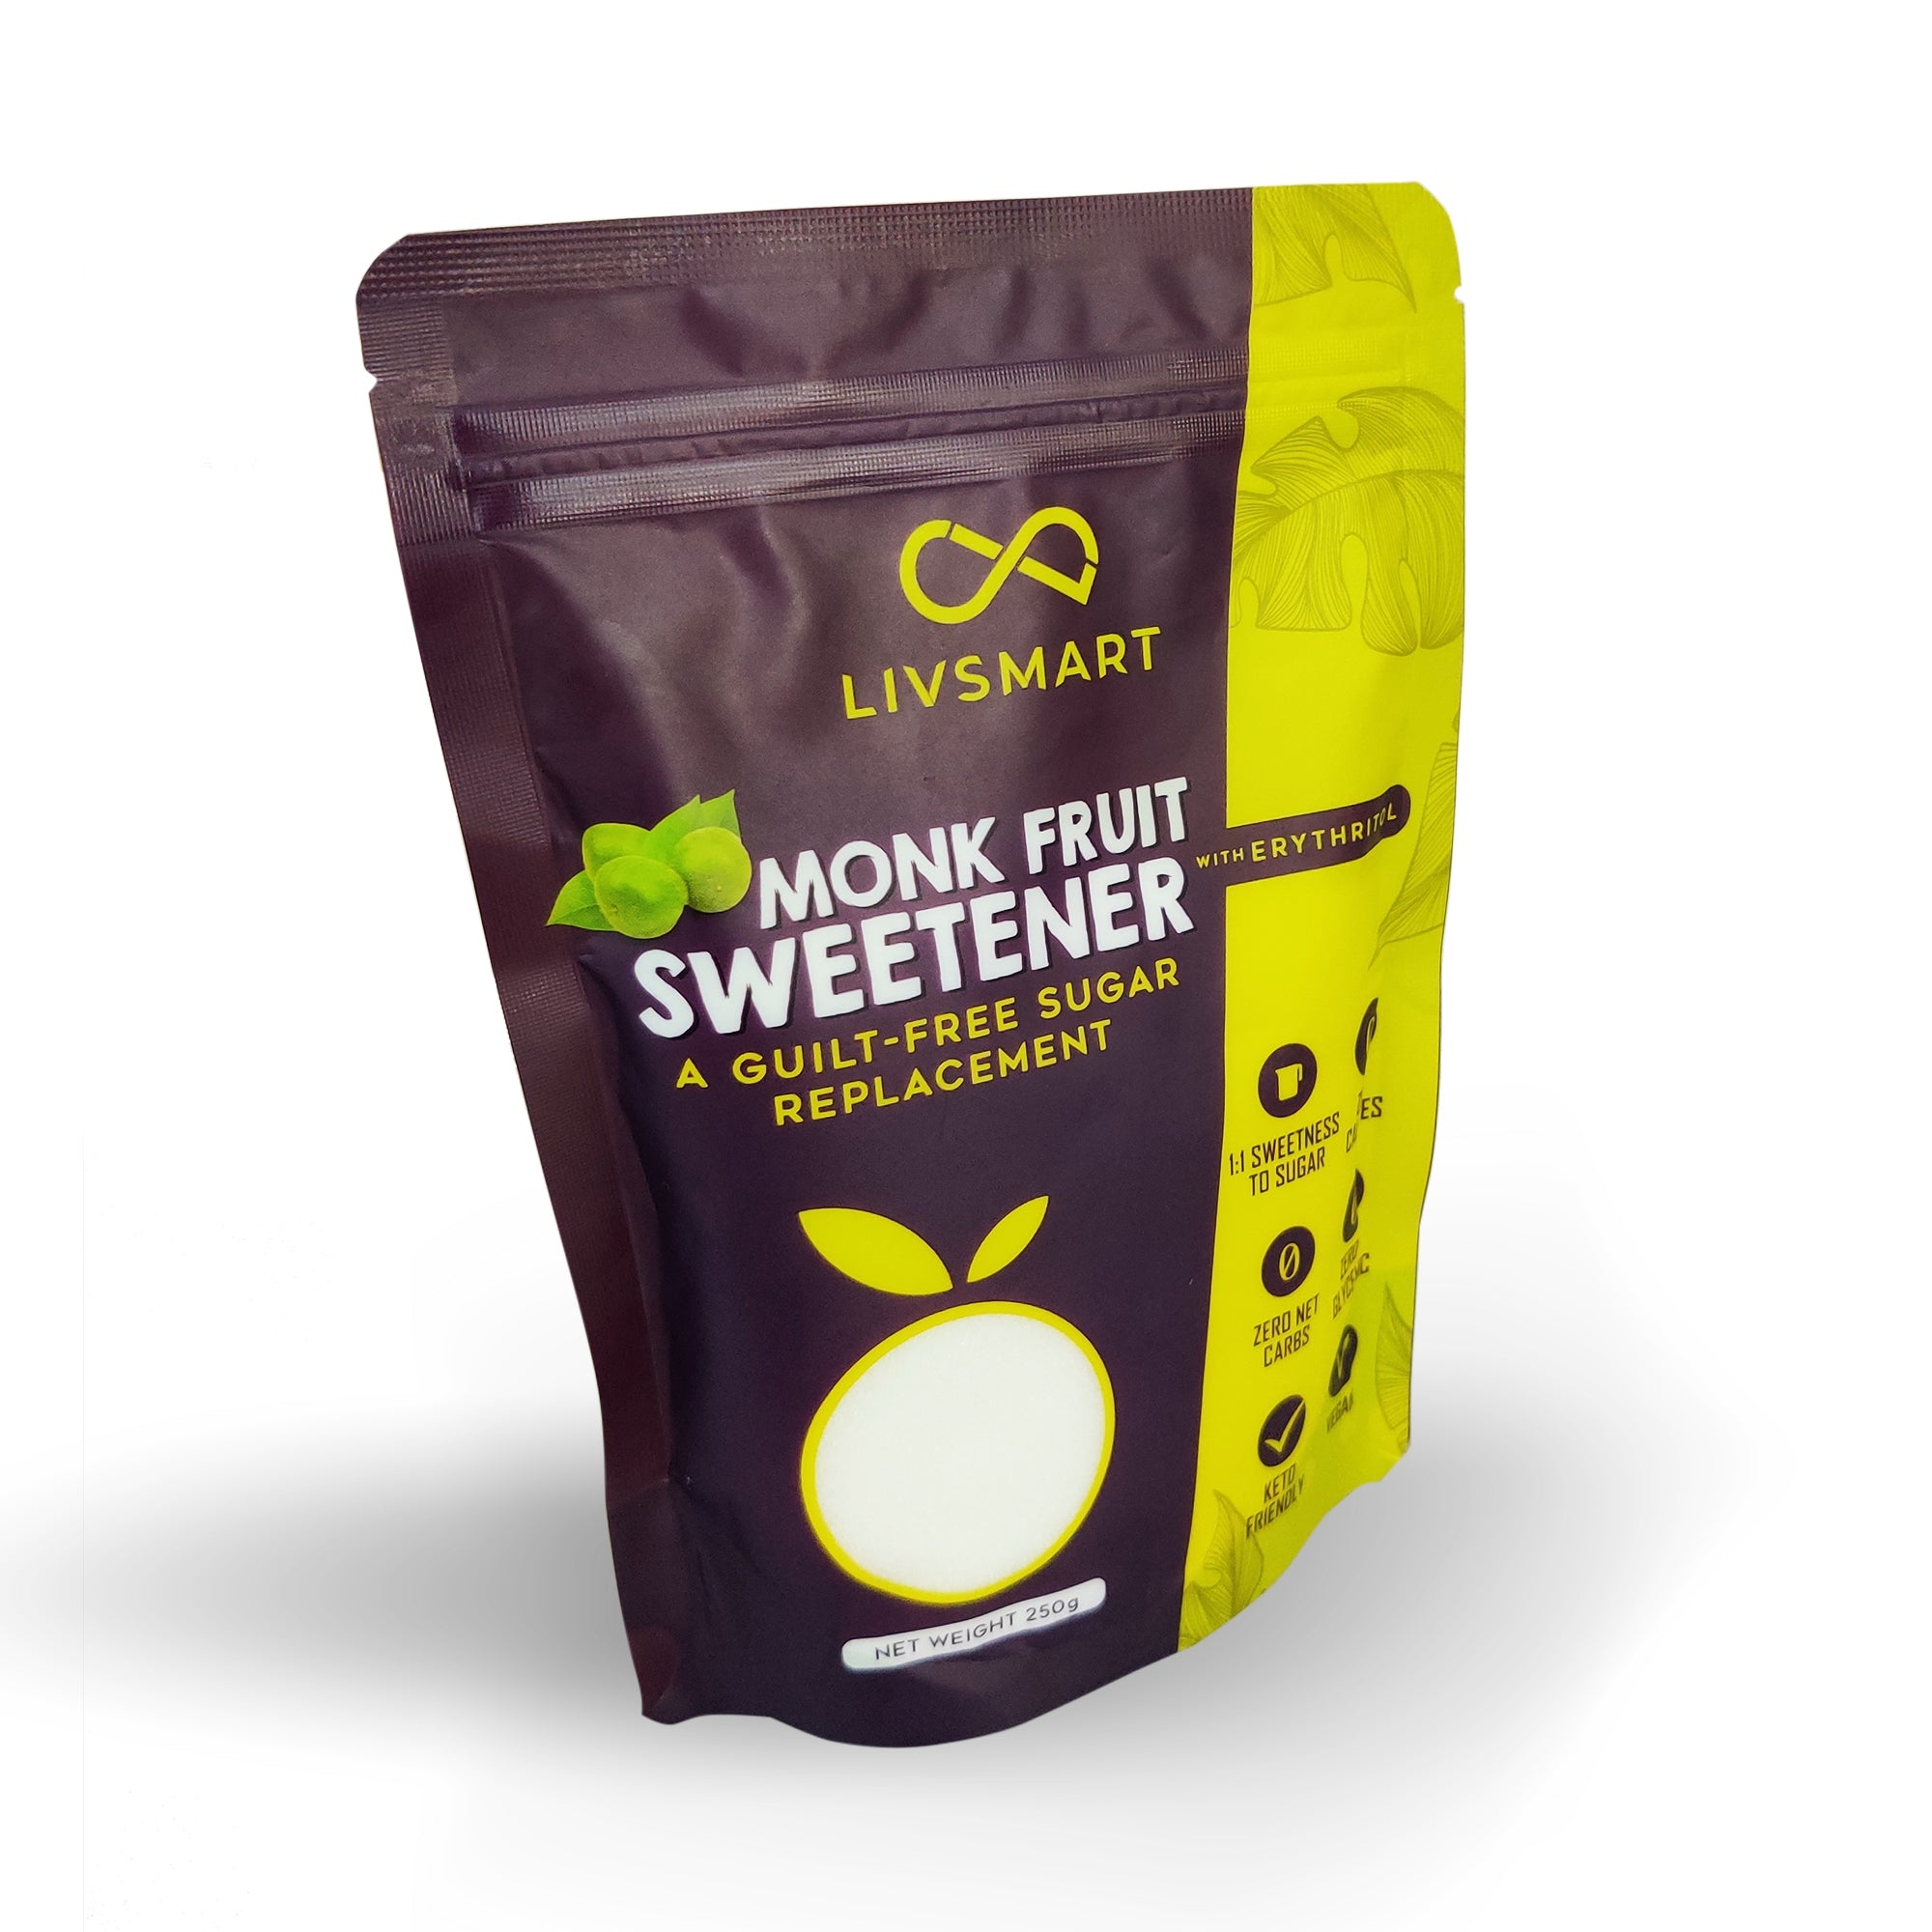 LIVSMART Monk Fruit Sweetener, 250g